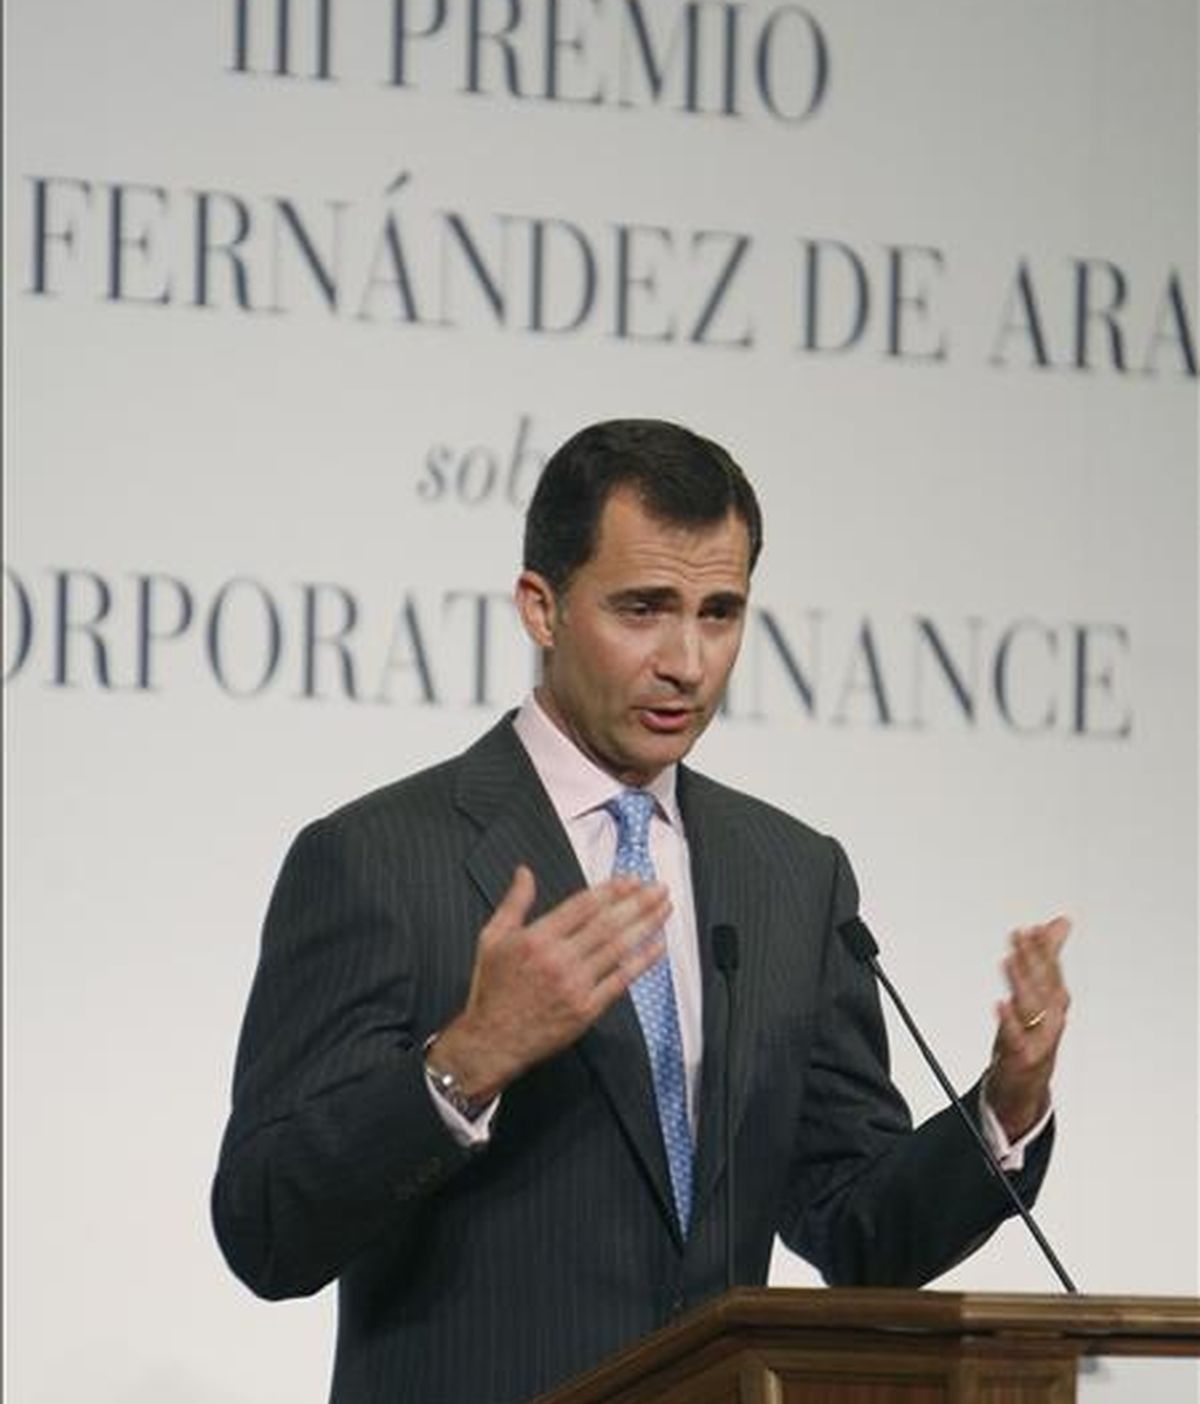 El Príncipe de Asturias durante su intervención en el acto de entrega del III Premio Jaime Fernández de Araoz, que ha tenido lugar esta tarde en Madrid. EFE